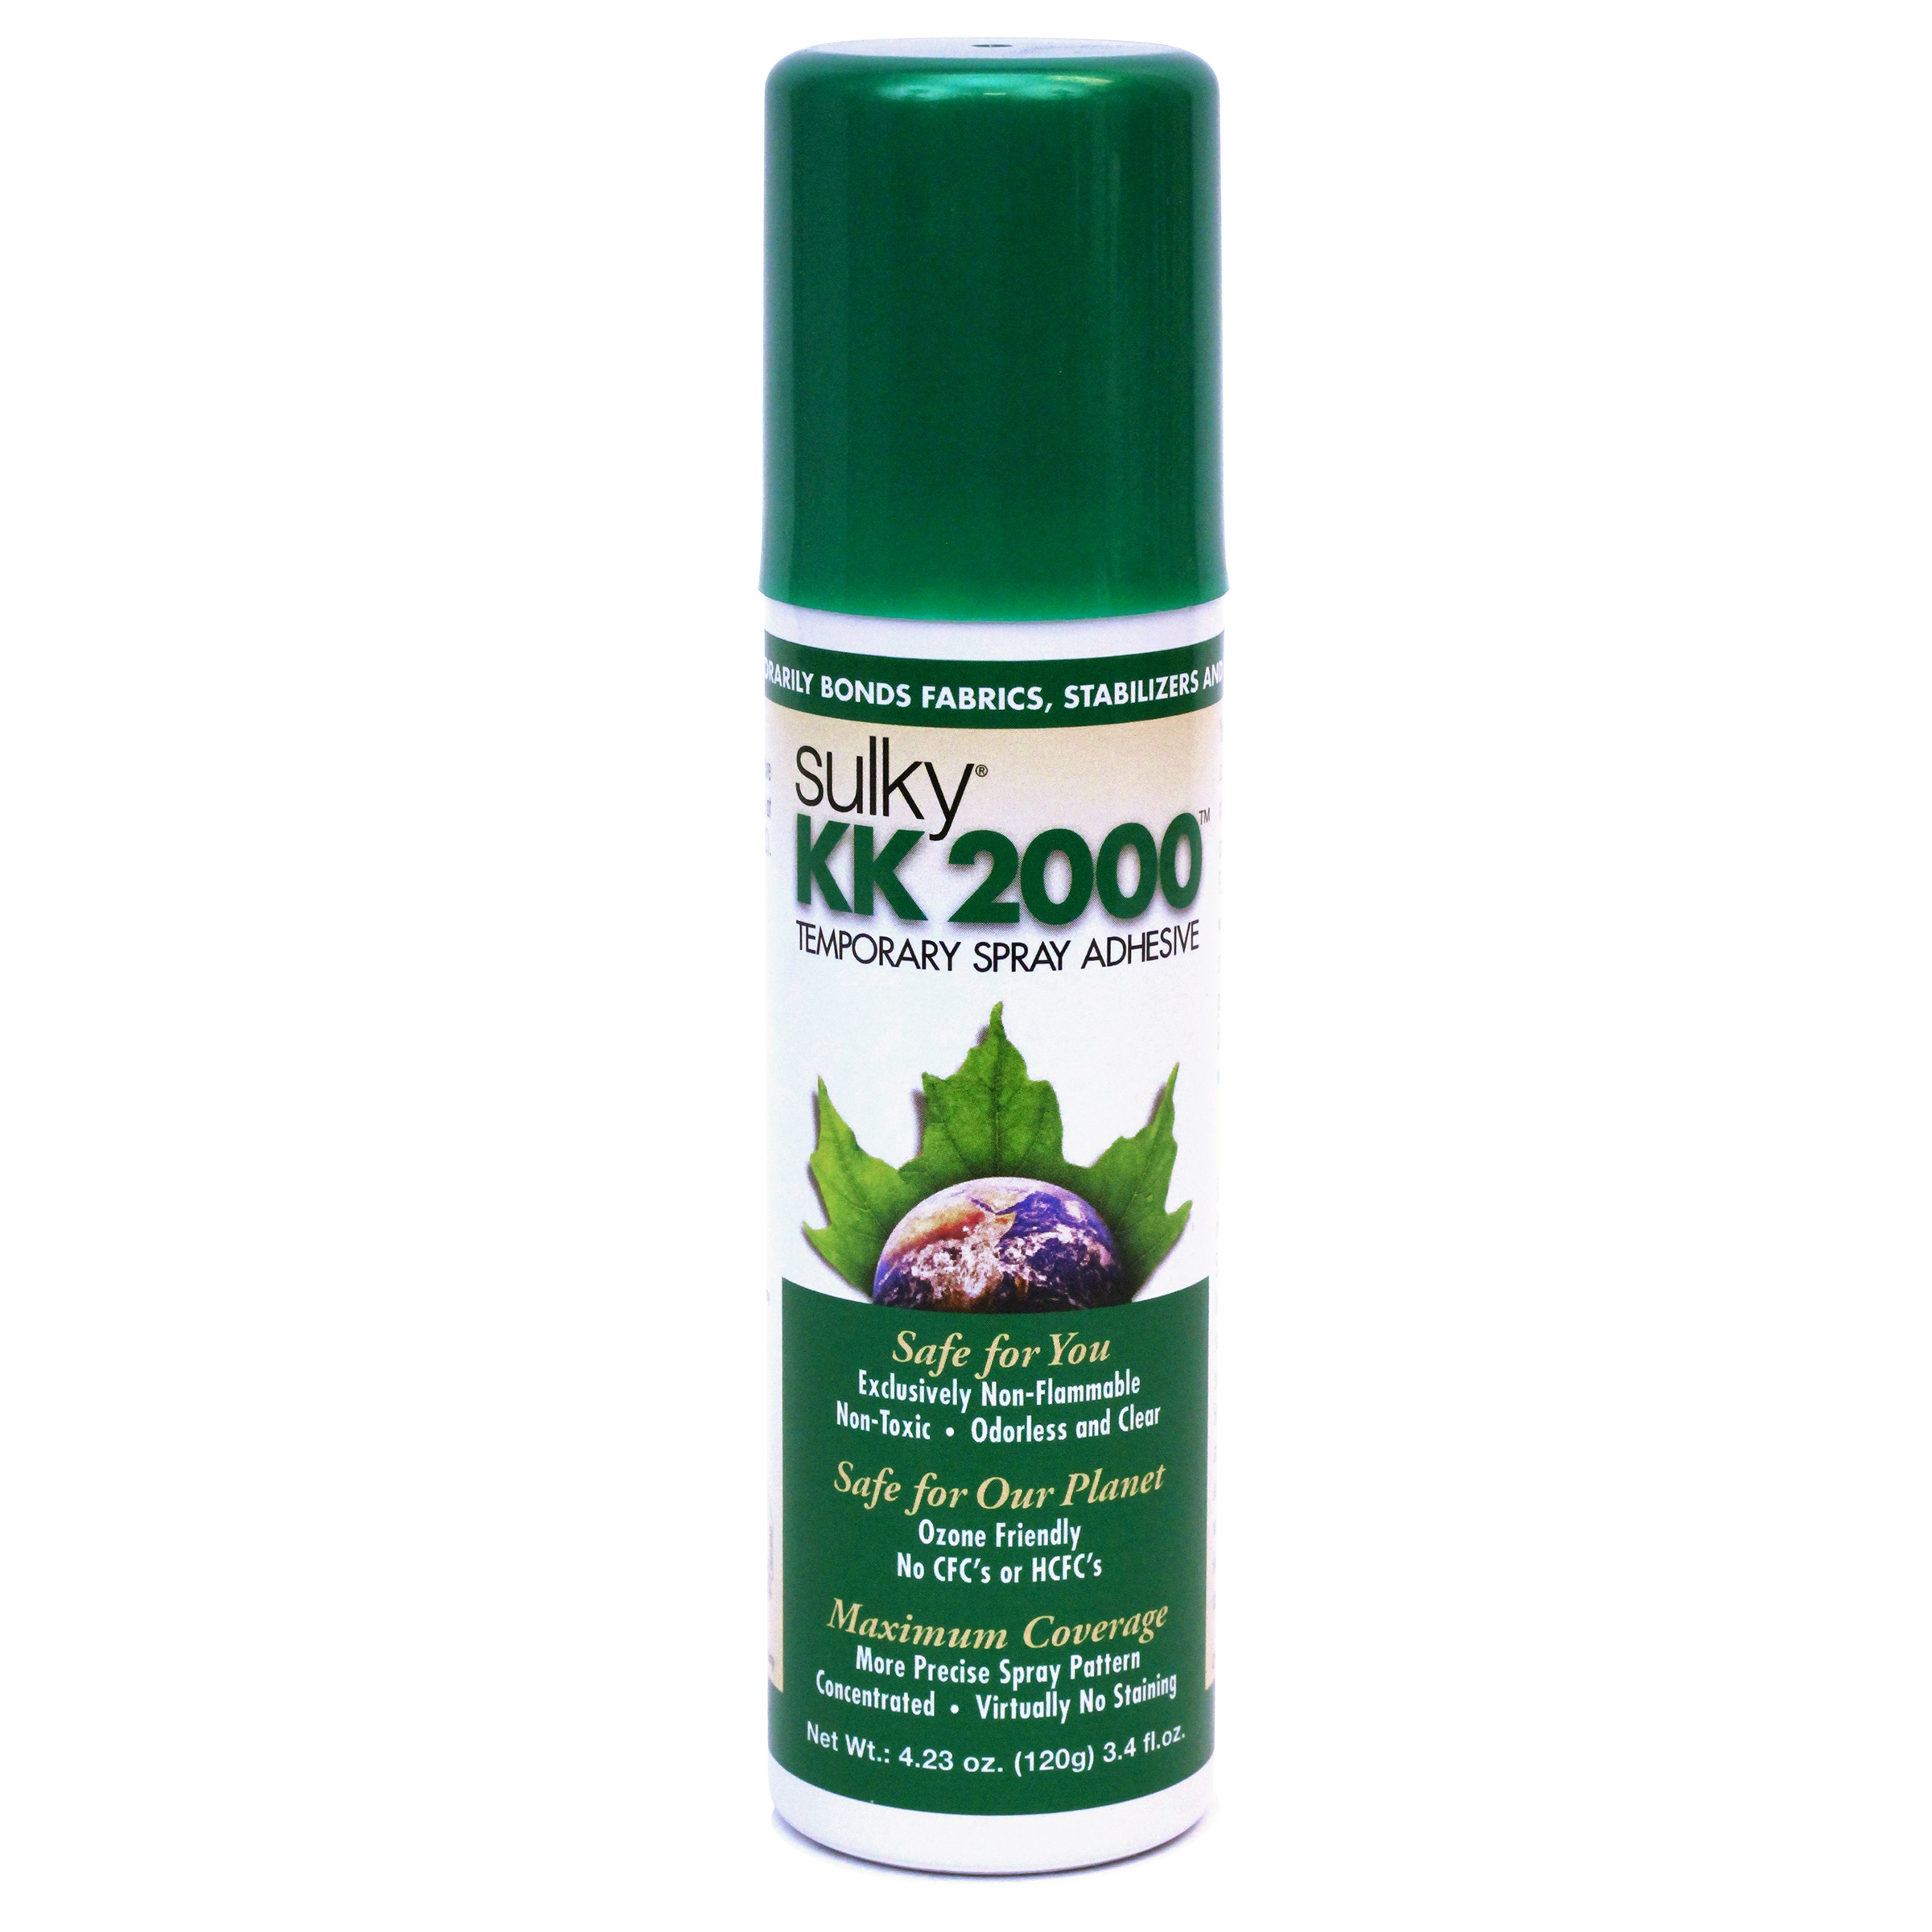 Where and how do I use KK 2000 Temporary Spray Adhesive?